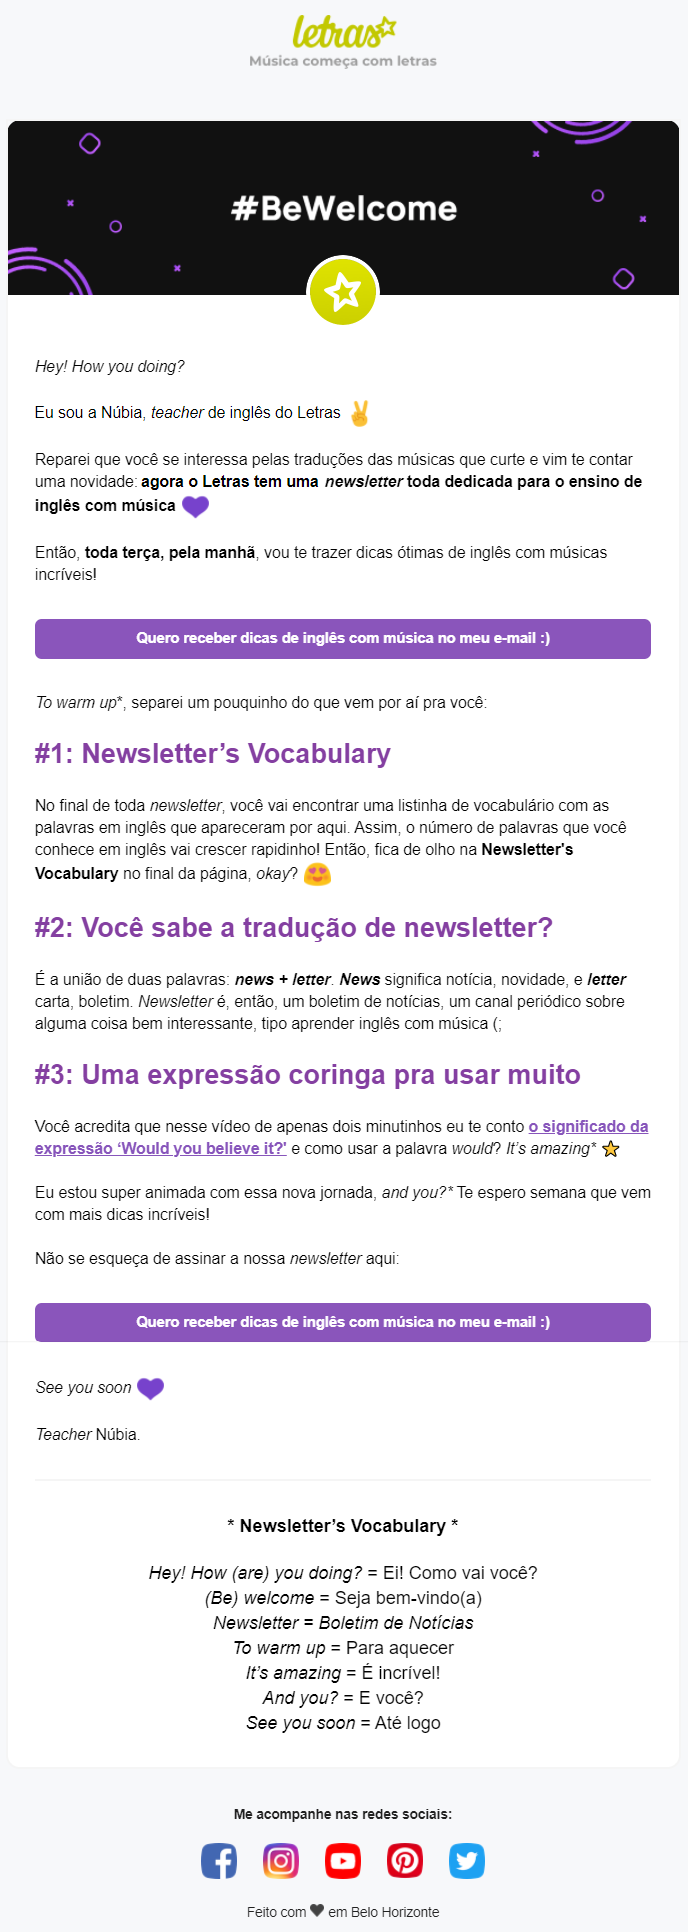 Letras.mus.br - Via E-mail marketing